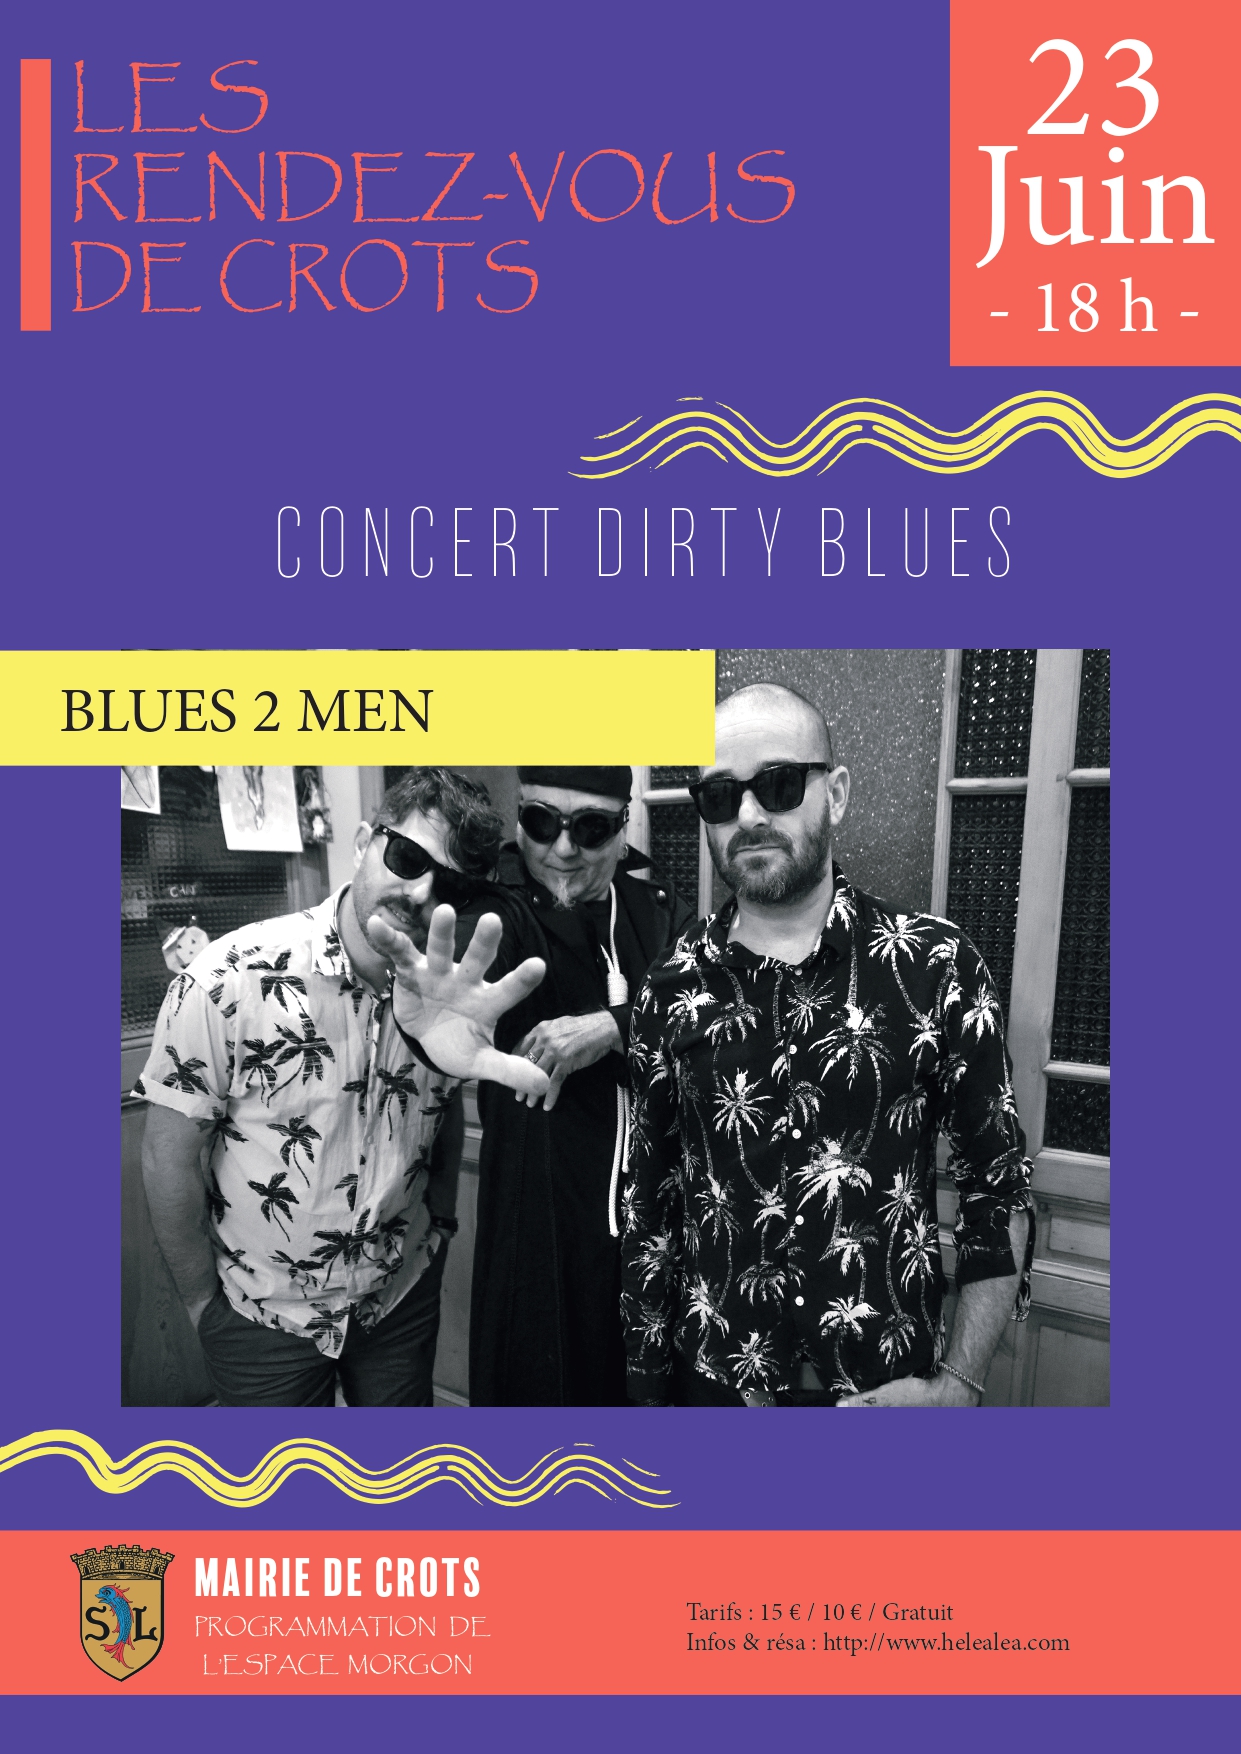 Concert "Blues 2 Men" CROTS